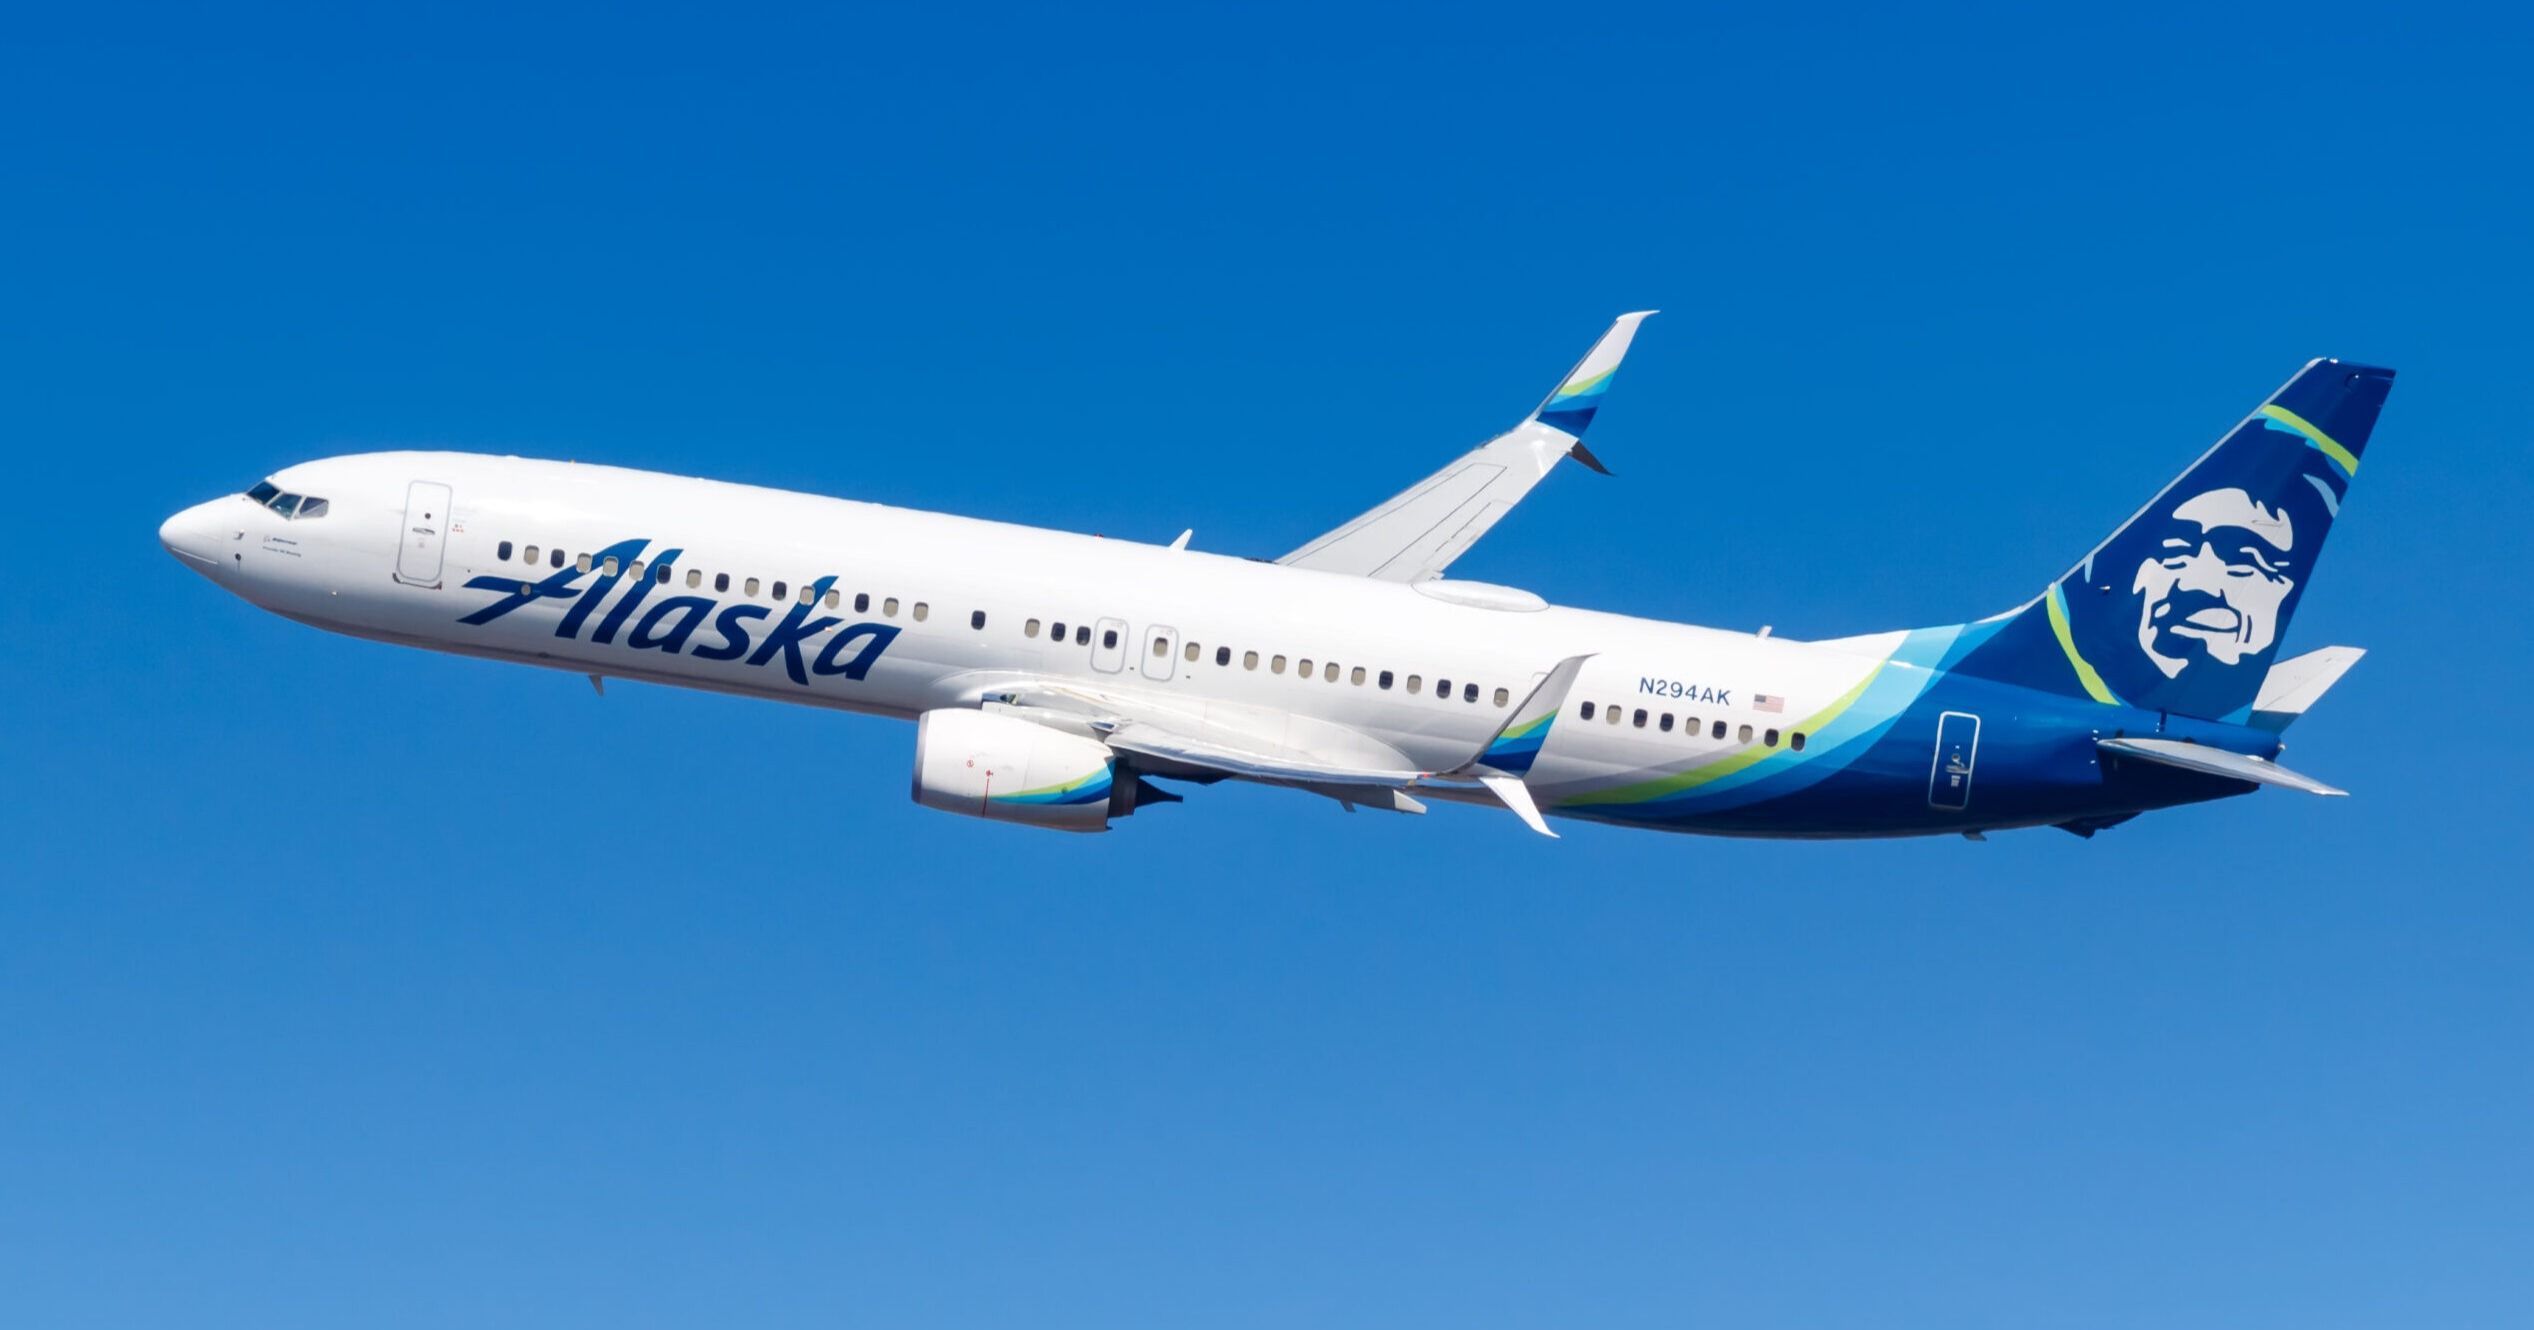 Apuestan por la próxima generación de nuevas empresas de aviación, Alaska Airlines por medio de UPLabs